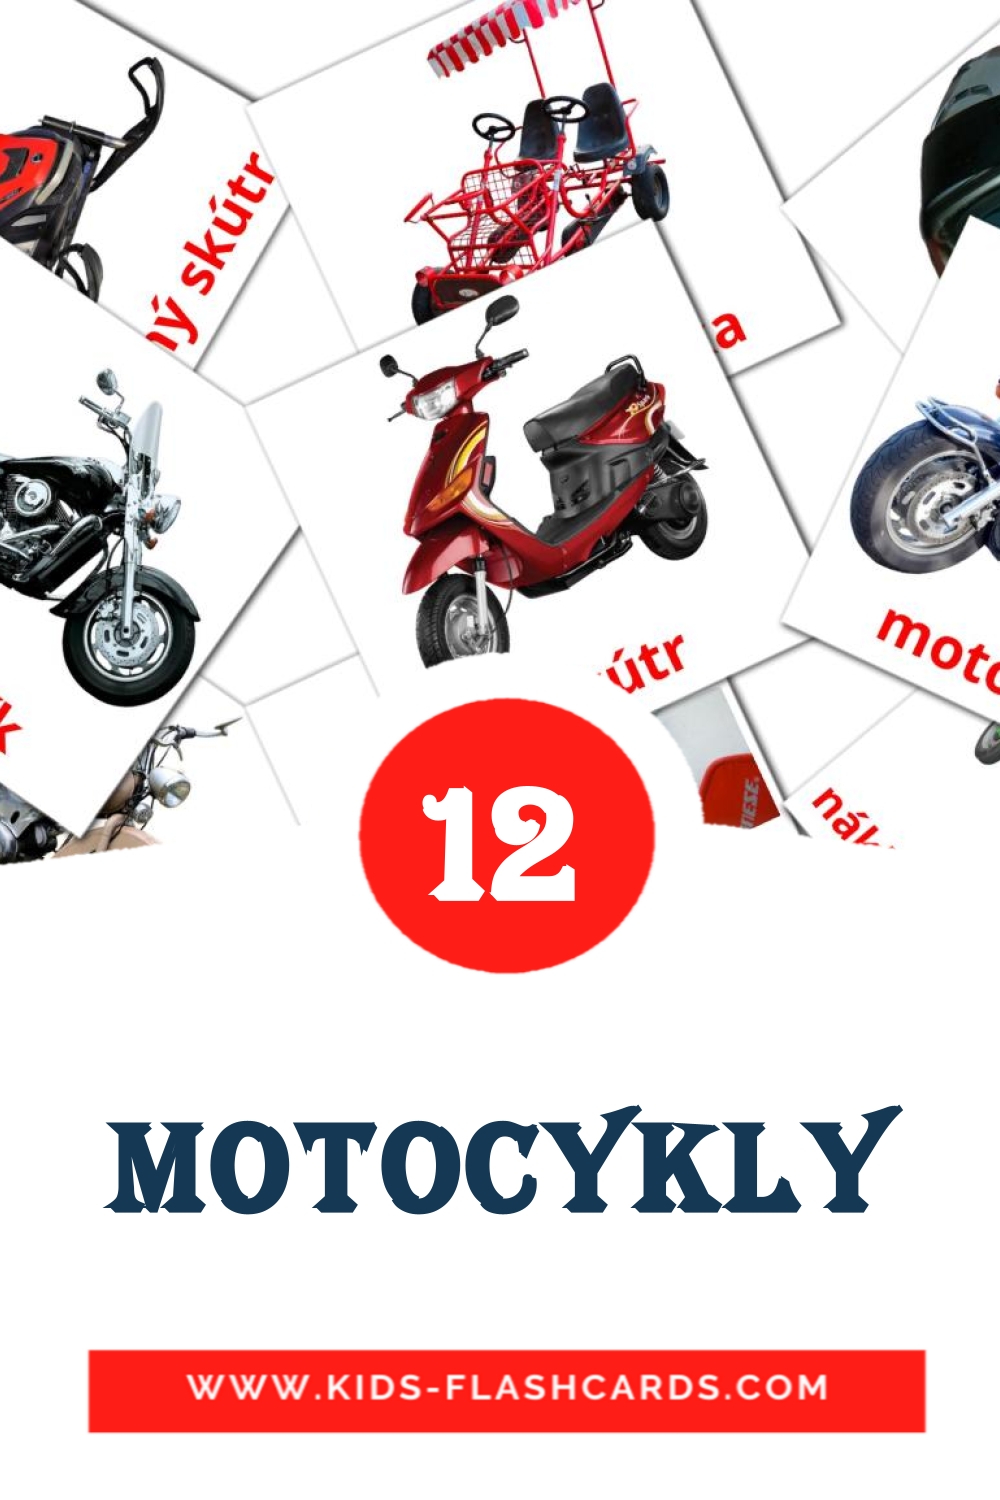 12 tarjetas didacticas de Motocykly para el jardín de infancia en checo